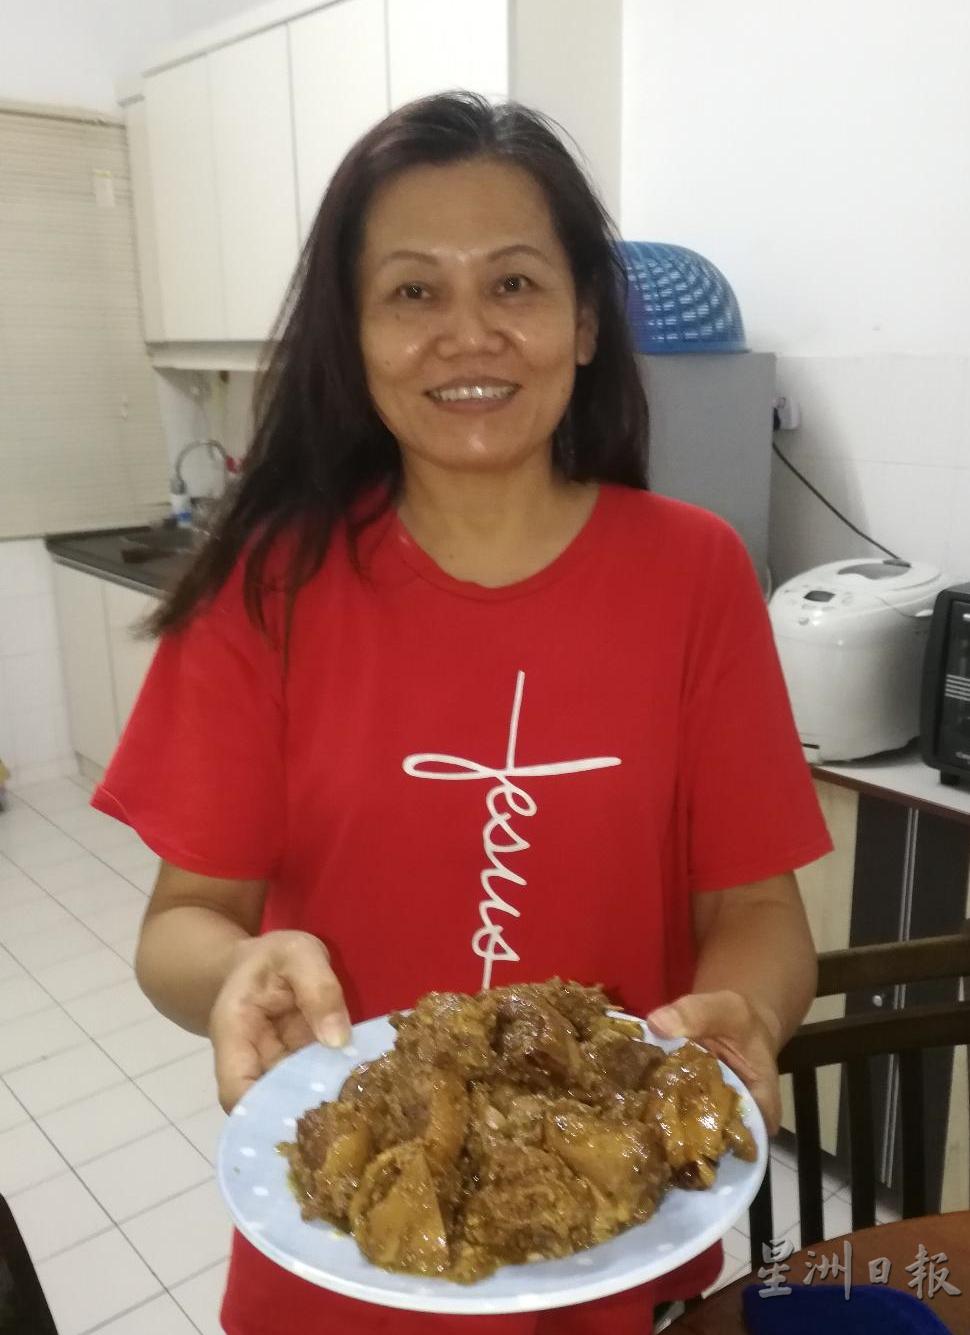 雷玉妹煮广西酱料鸭的功夫学自家婆黎美兰。

